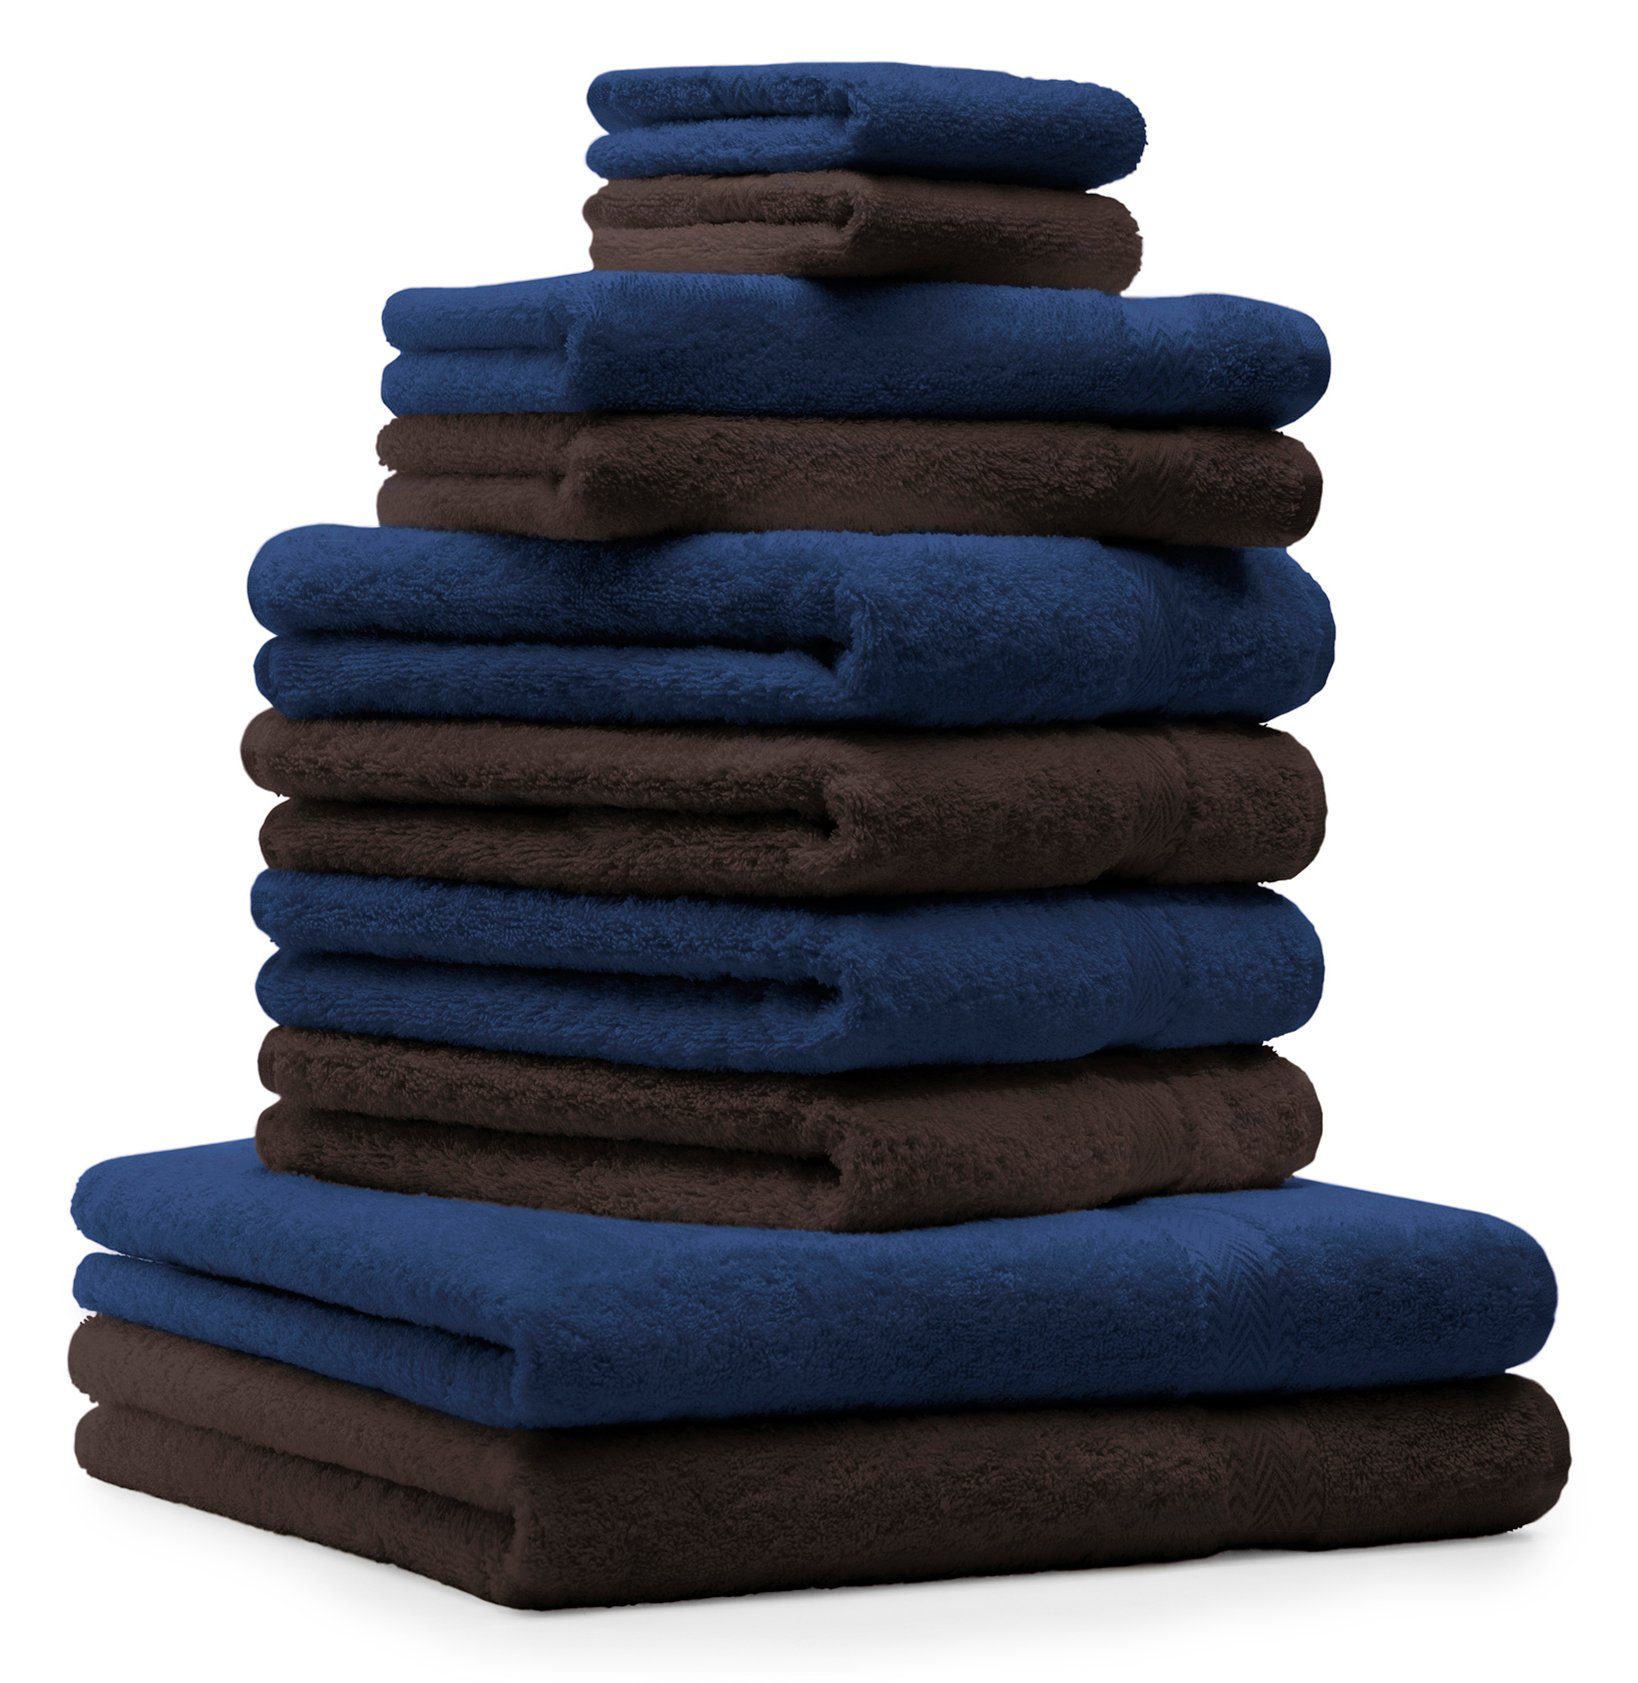 Betz Handtuch Set Classic 10-TLG. dunkelblau Farbe Baumwolle und Dunkelbraun, Handtücher-Set 100